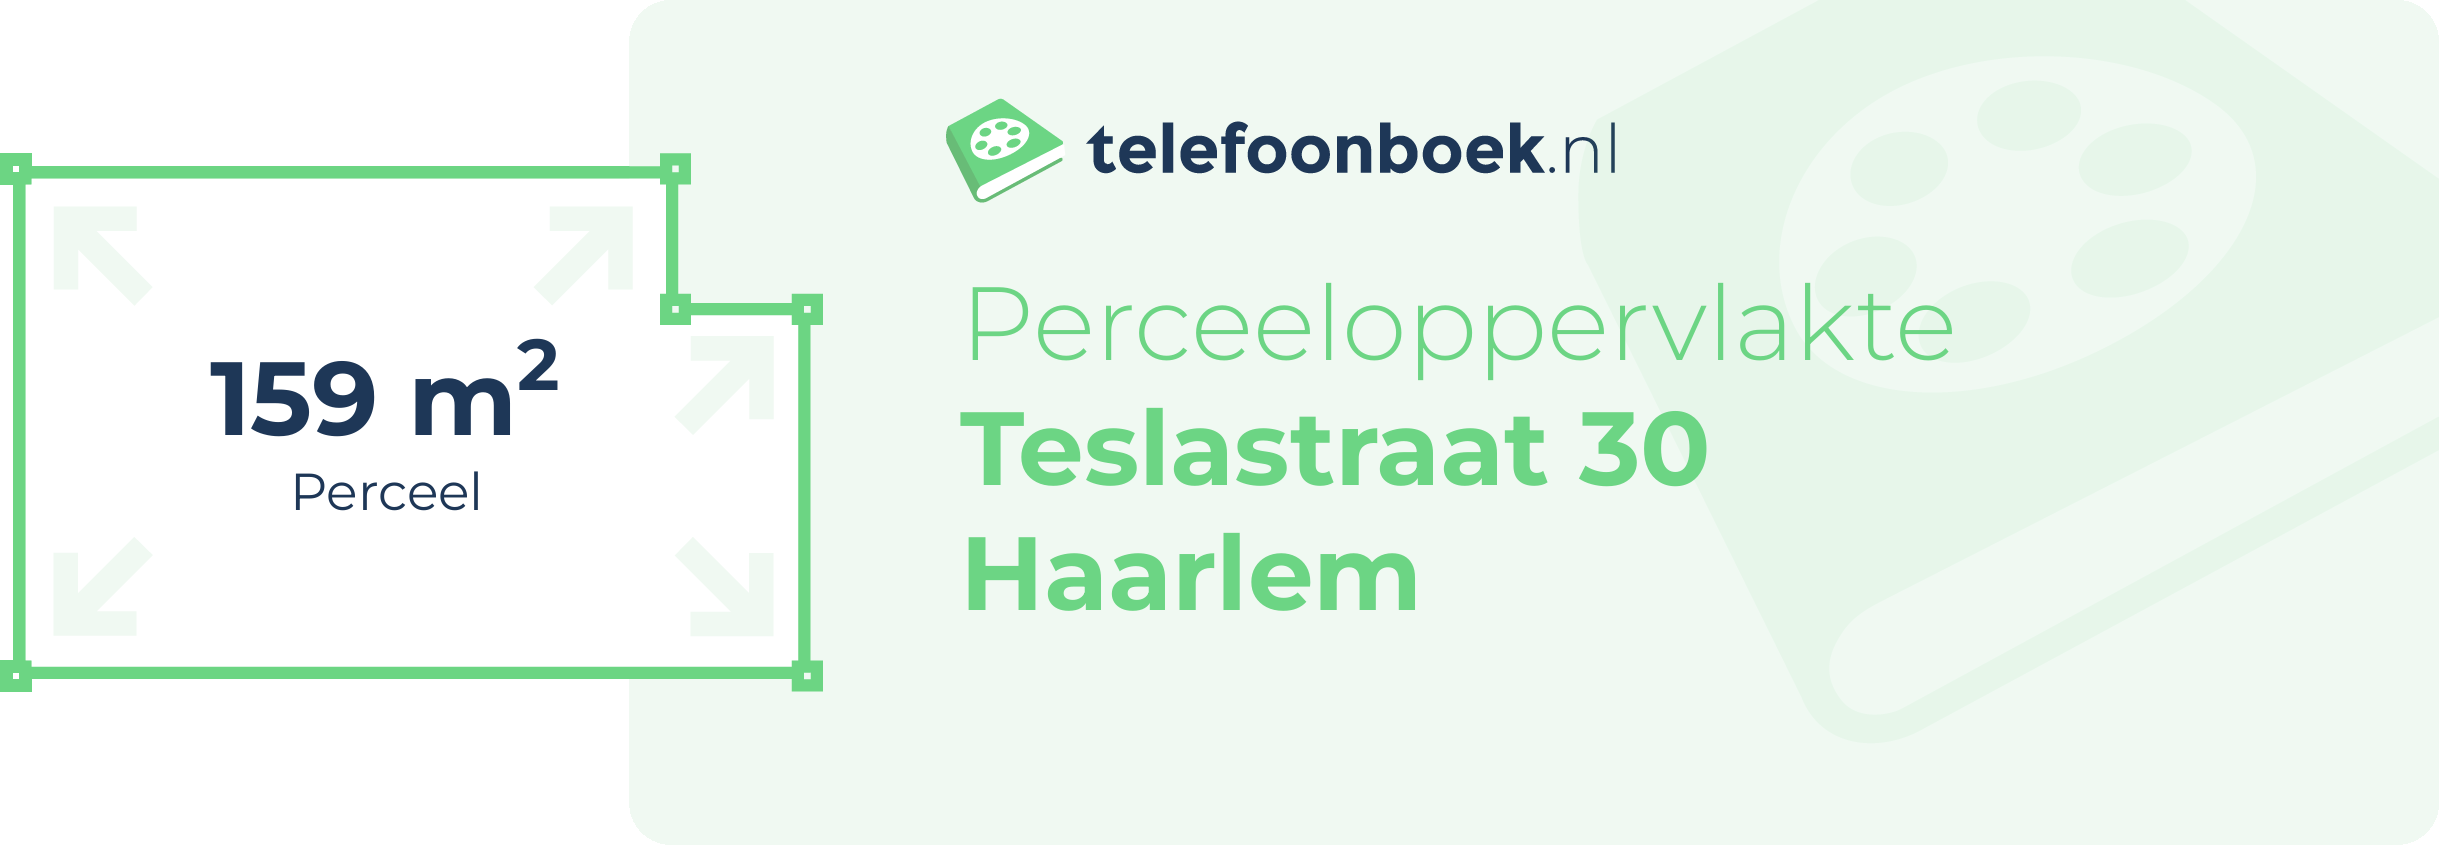 Perceeloppervlakte Teslastraat 30 Haarlem